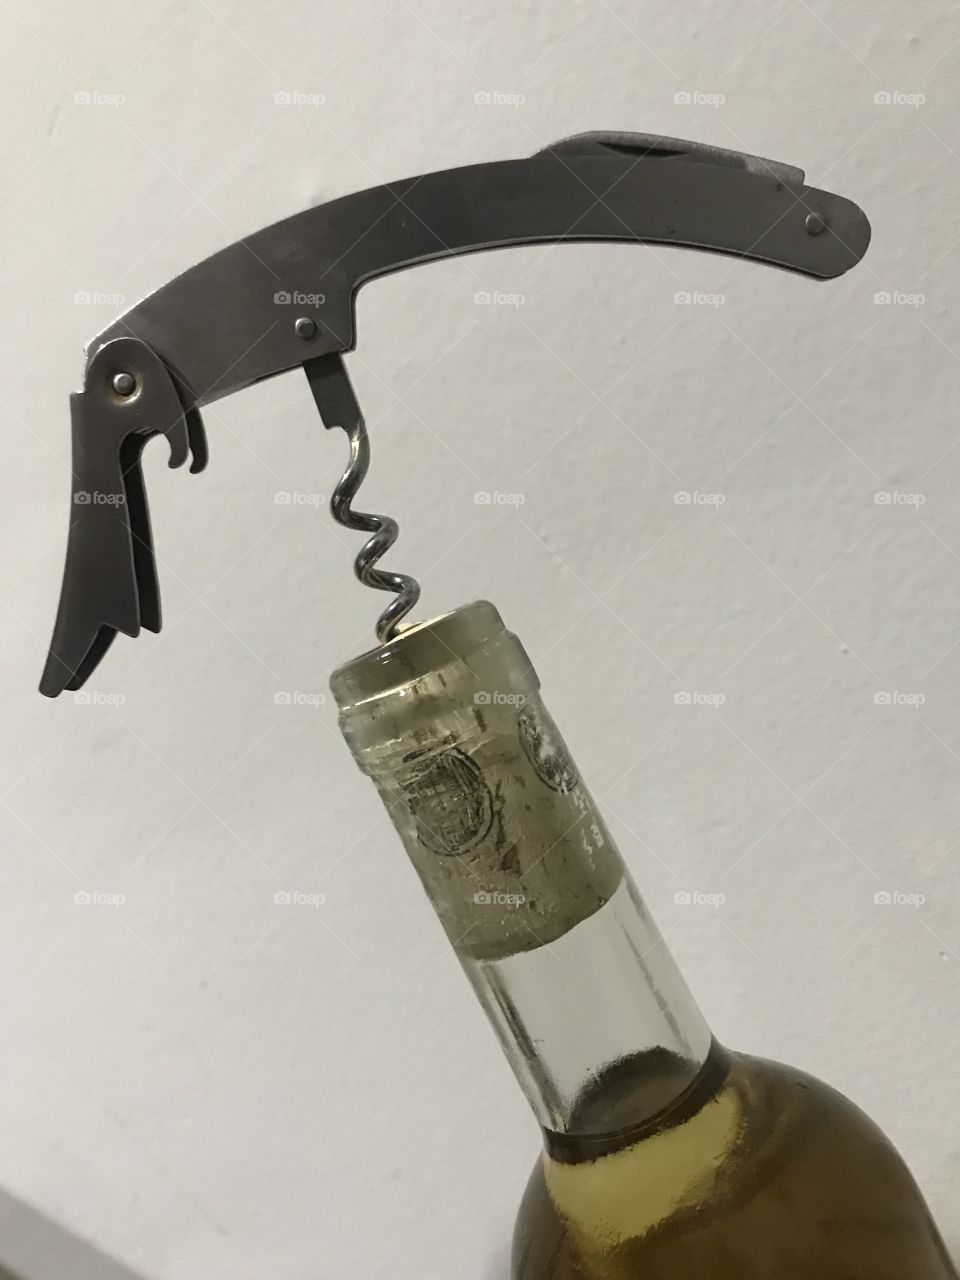 Corkscrew in a bottle 